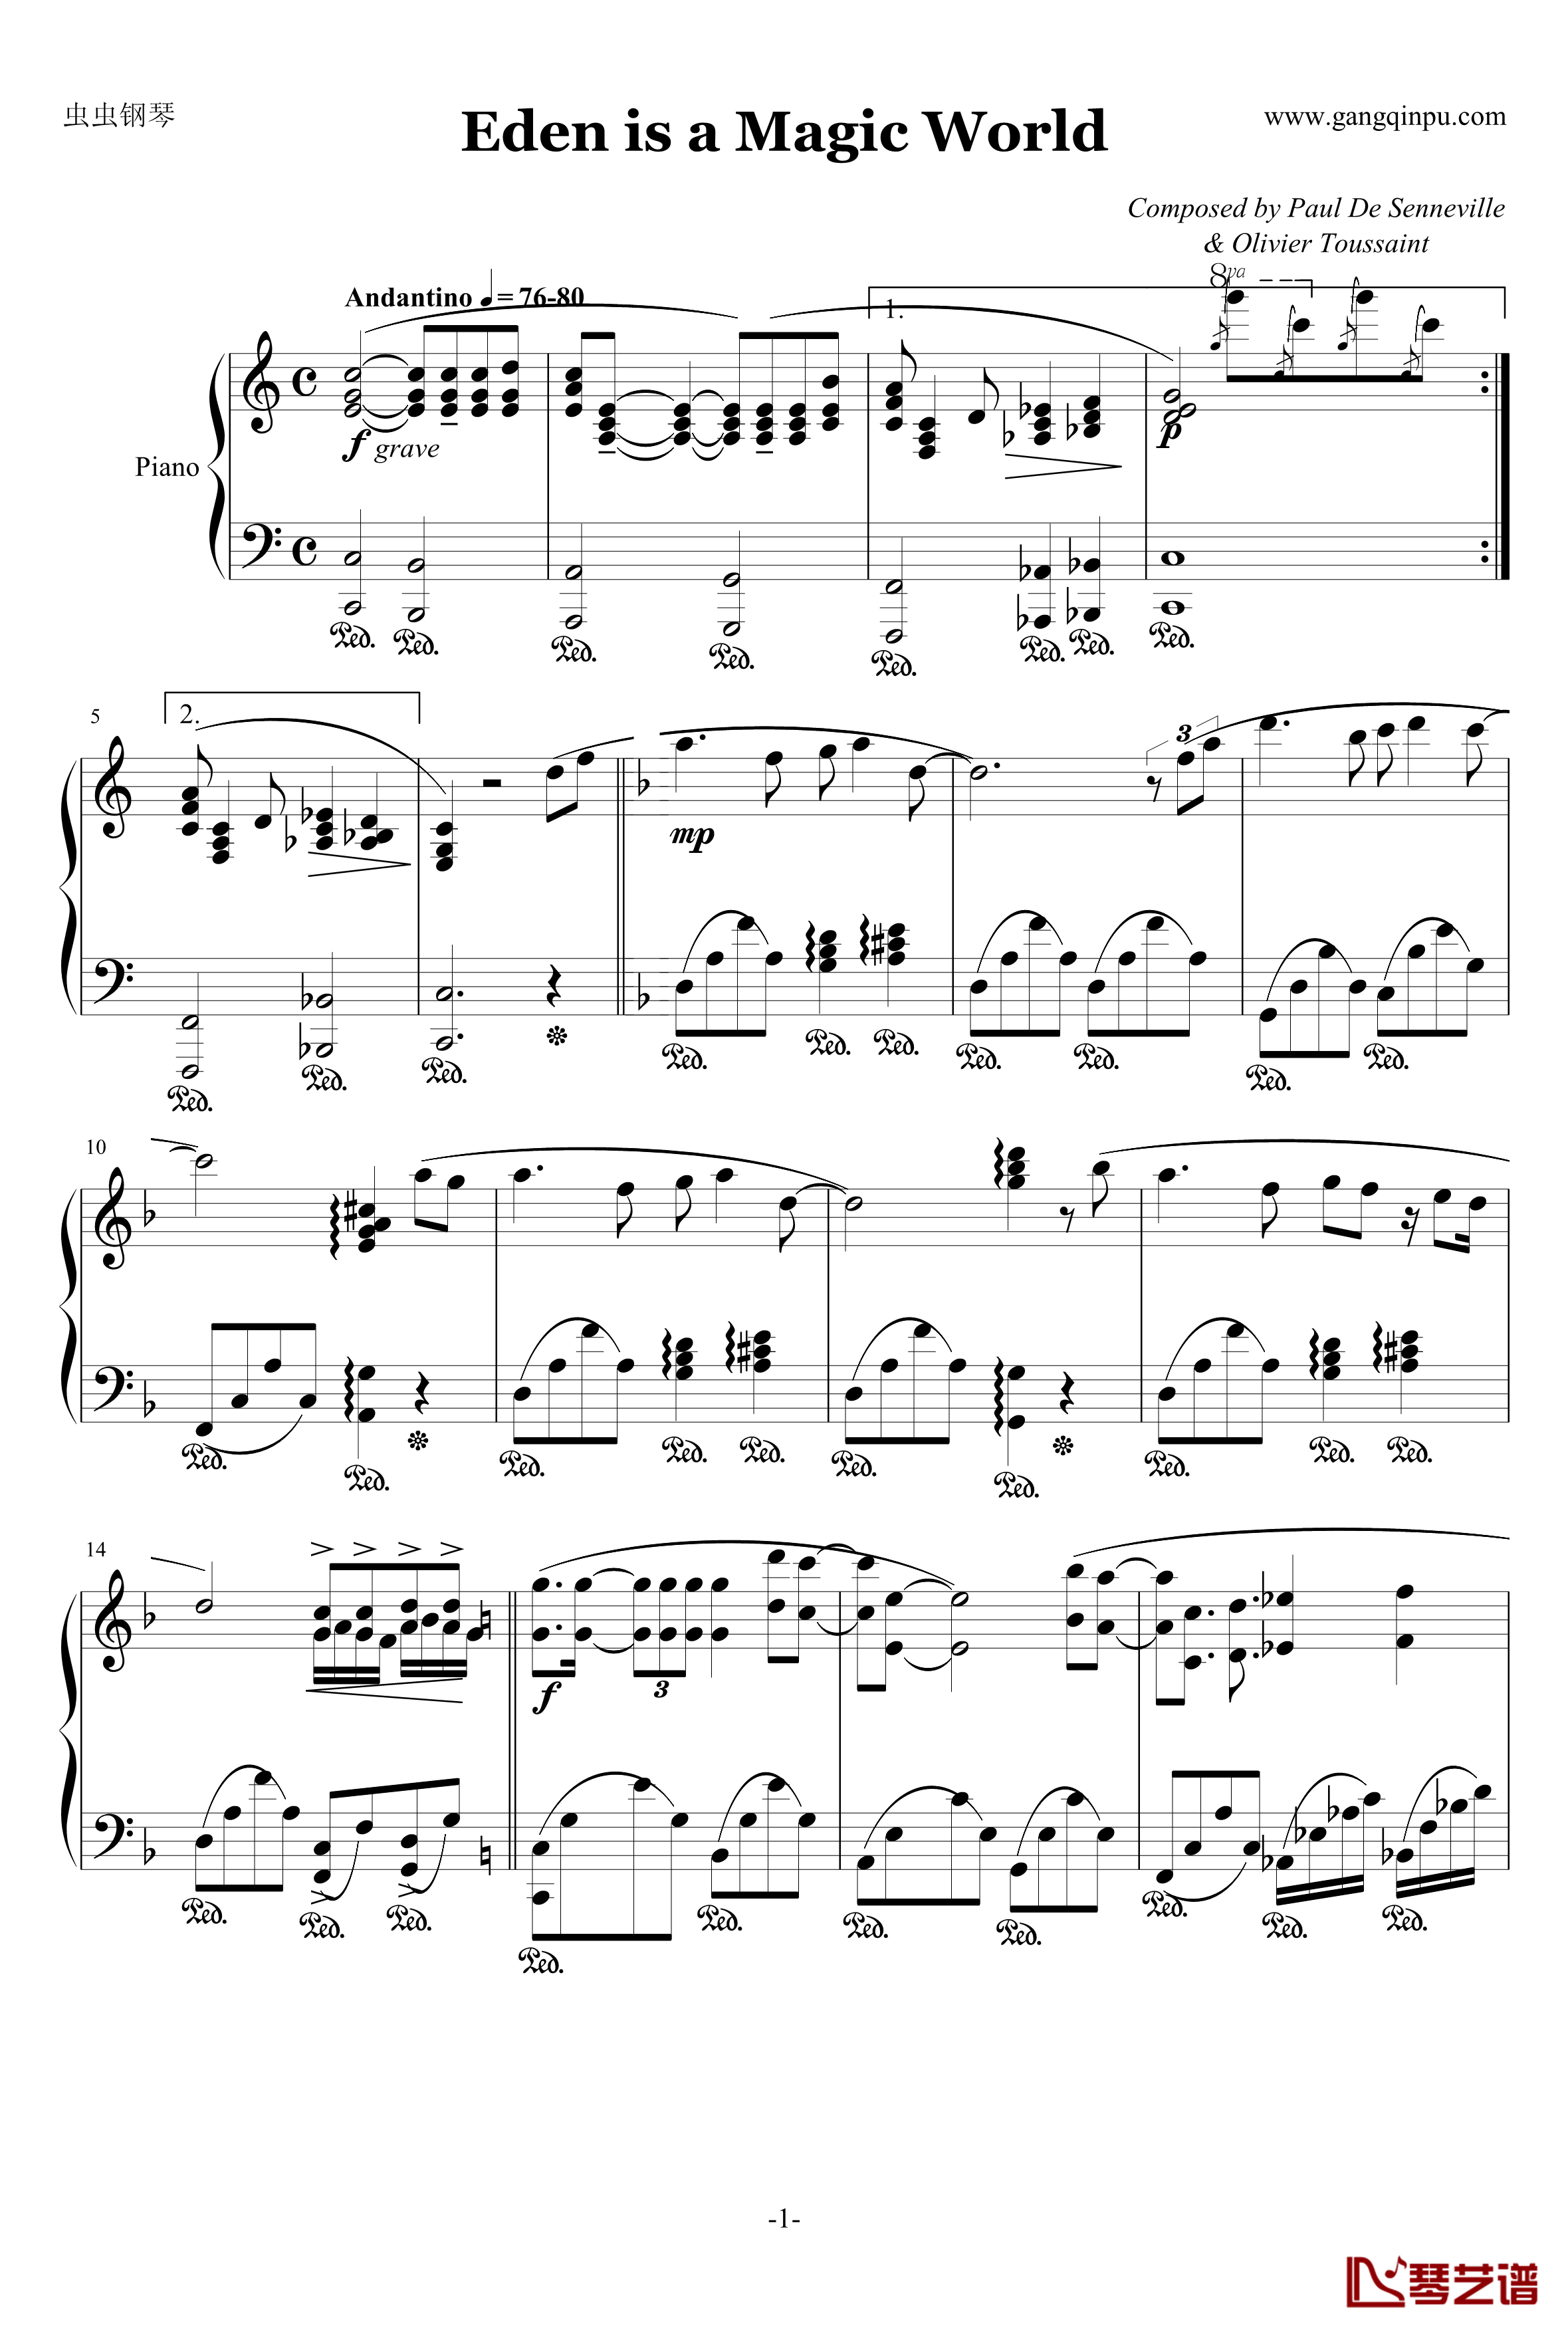 伊甸园奇境钢琴谱-1983日本现场版-克莱德曼1